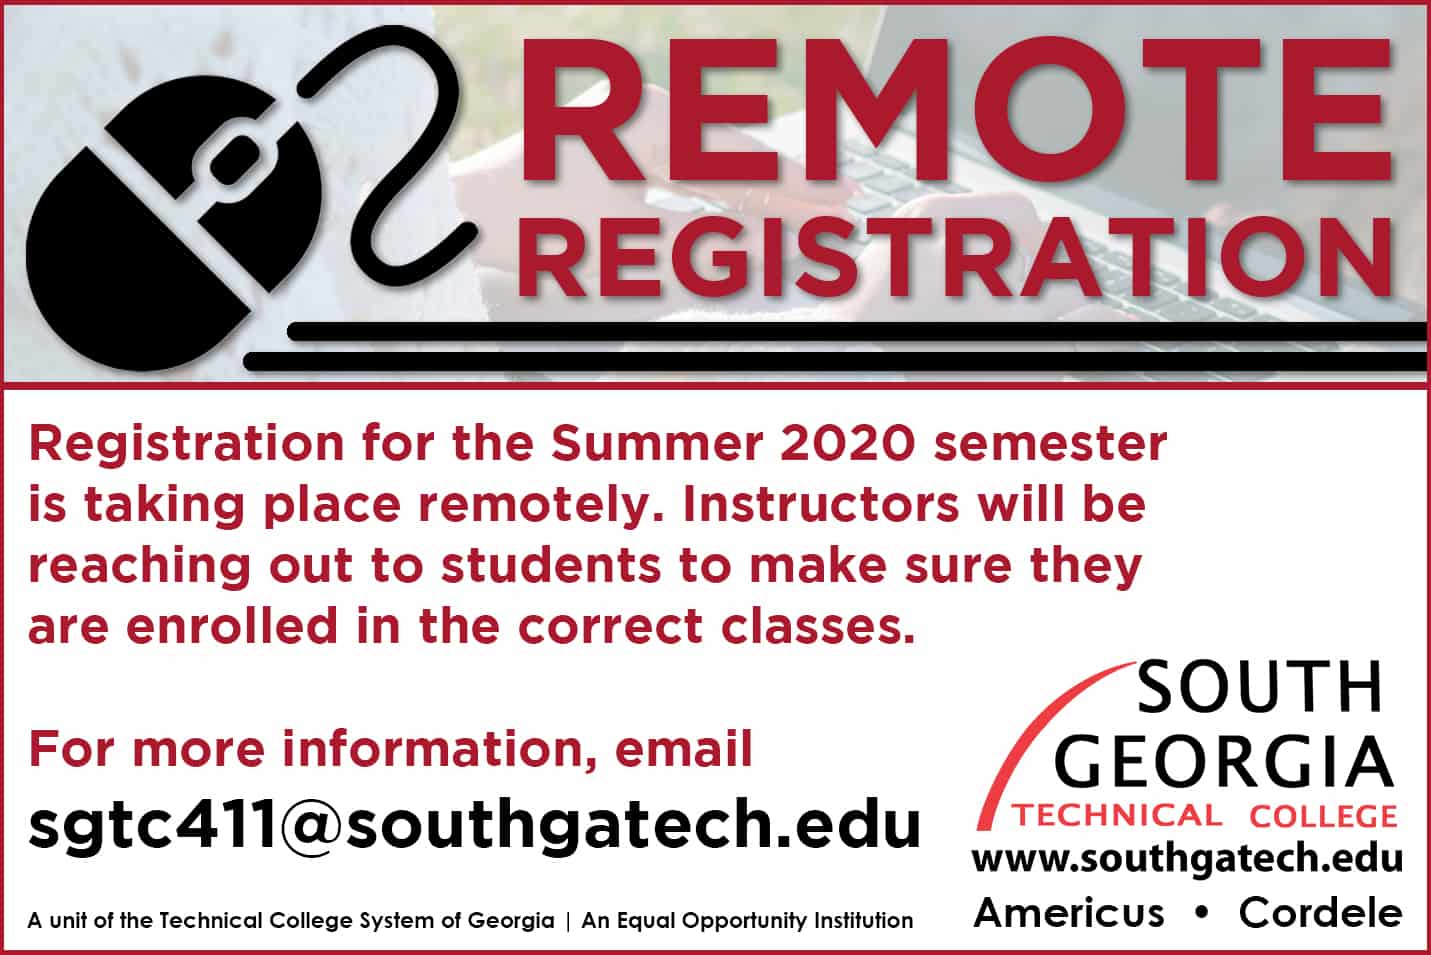 SGTC beginning remote registration for Summer Semester.